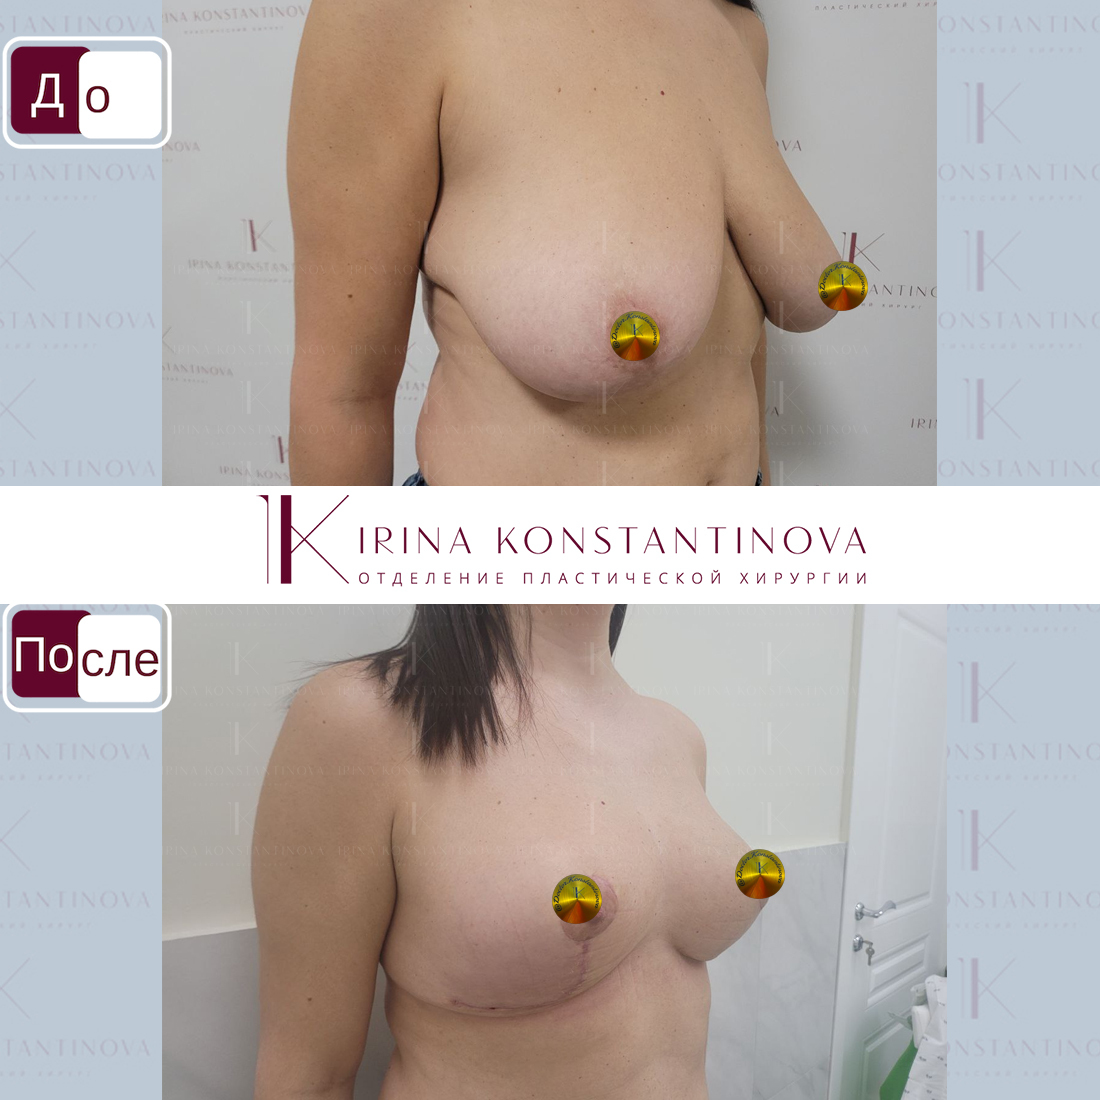 операция по уменьшения размера груди фото 37